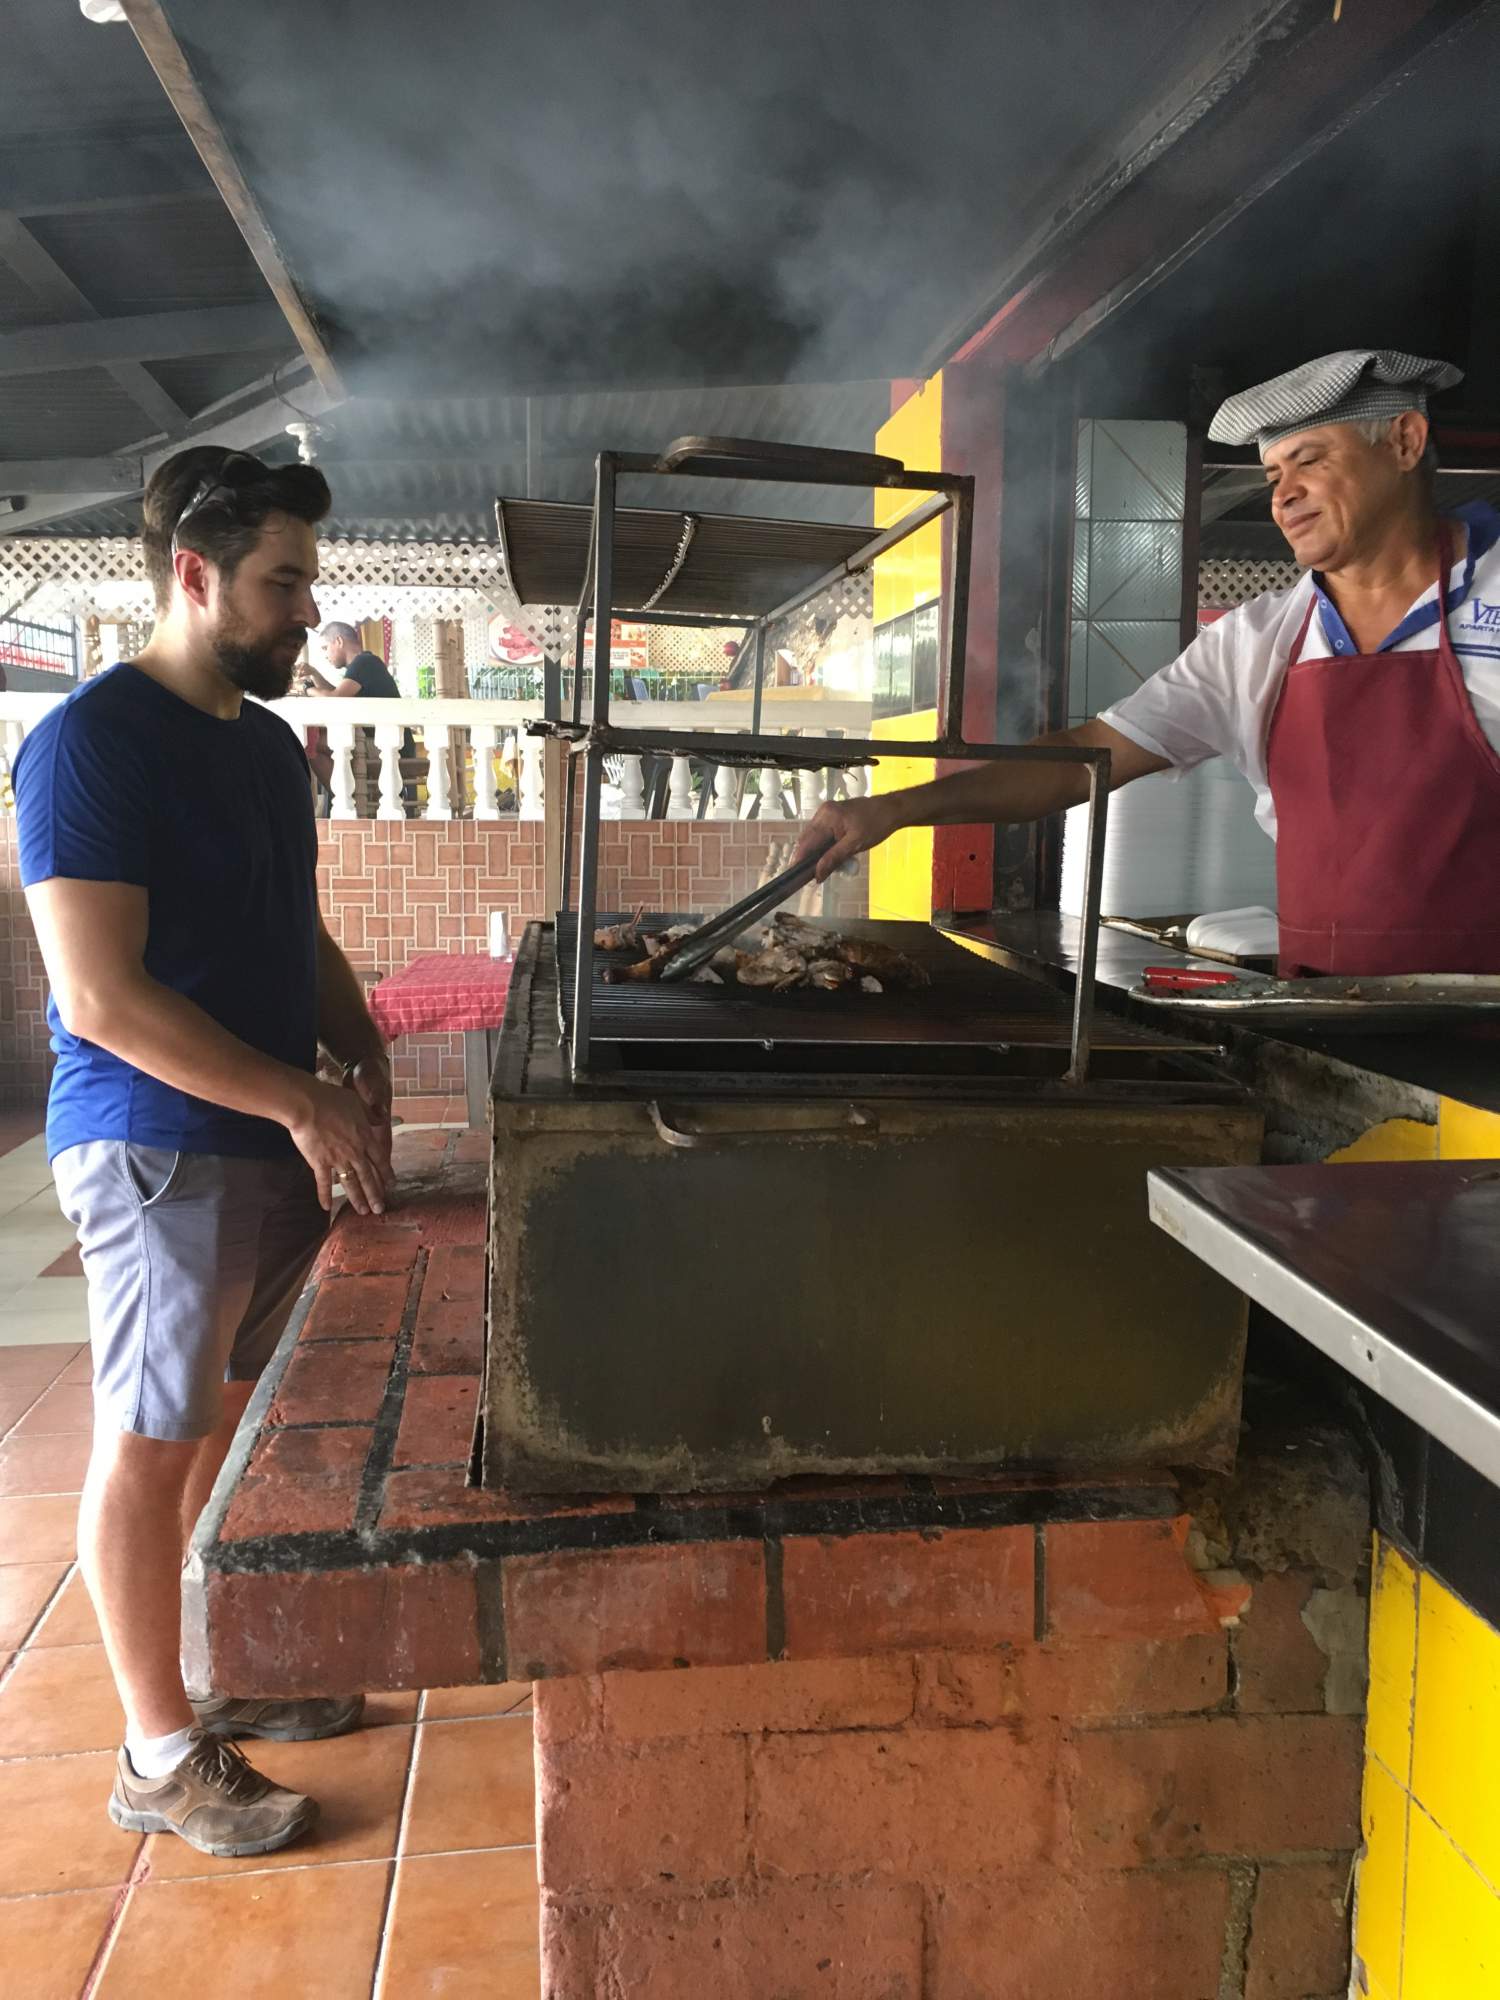 Having a popular lunch, the "pica pollo" in Dominican Republic